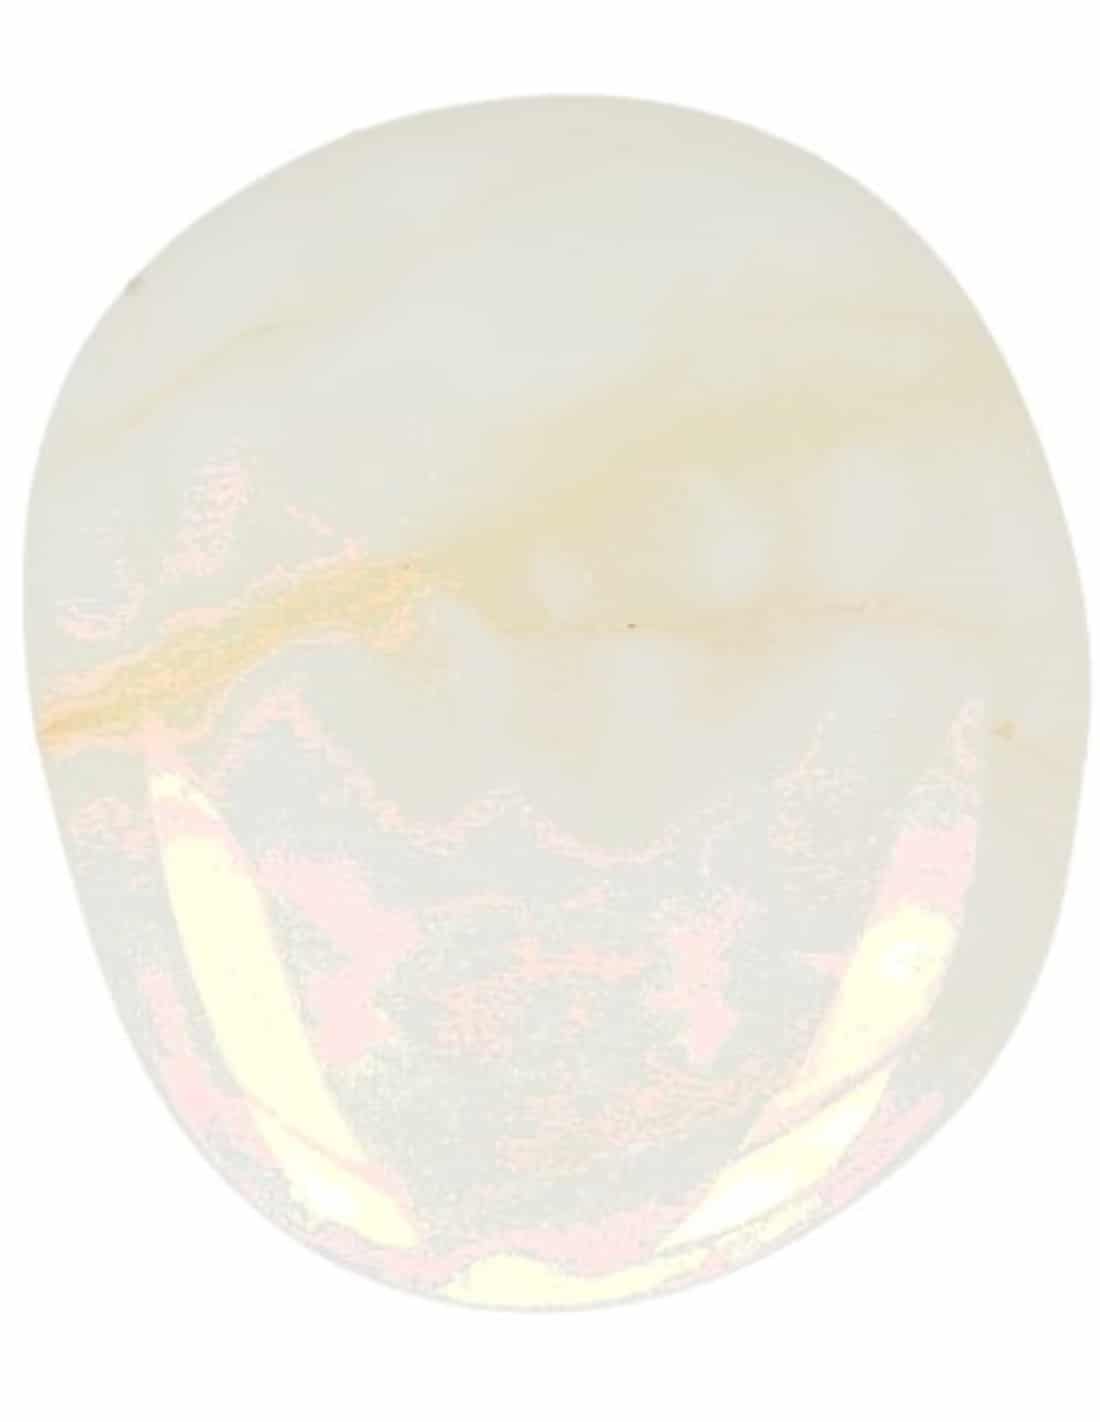 Zaksteen Opaal Wit